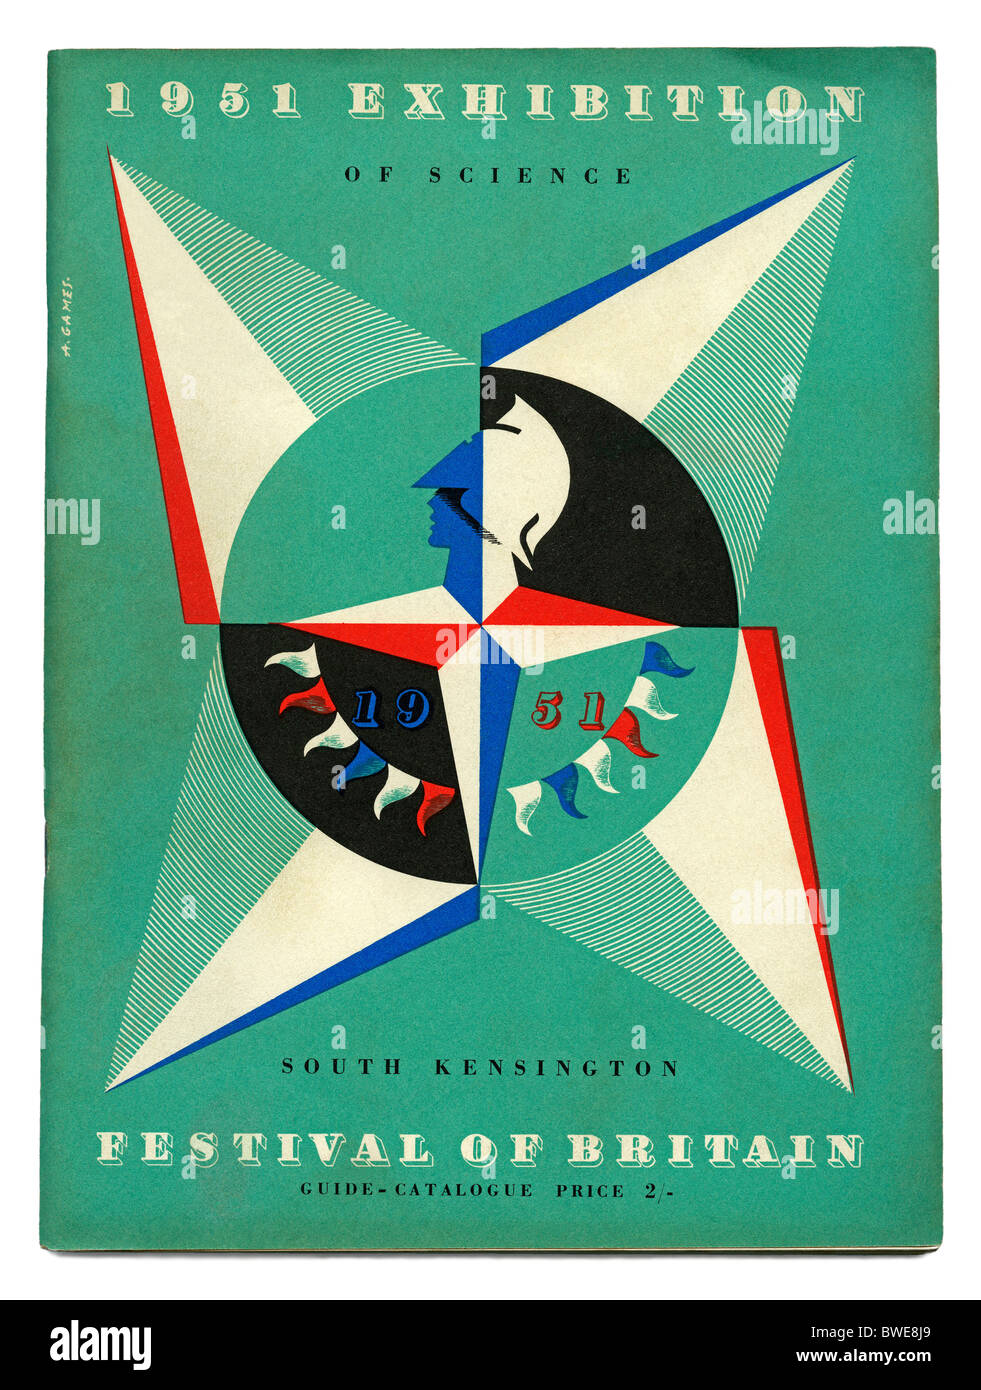 Cover von dem offiziellen Reiseführer des 1951 Festival of Britain Ausstellung of Science, South Kensington, London Stockfoto